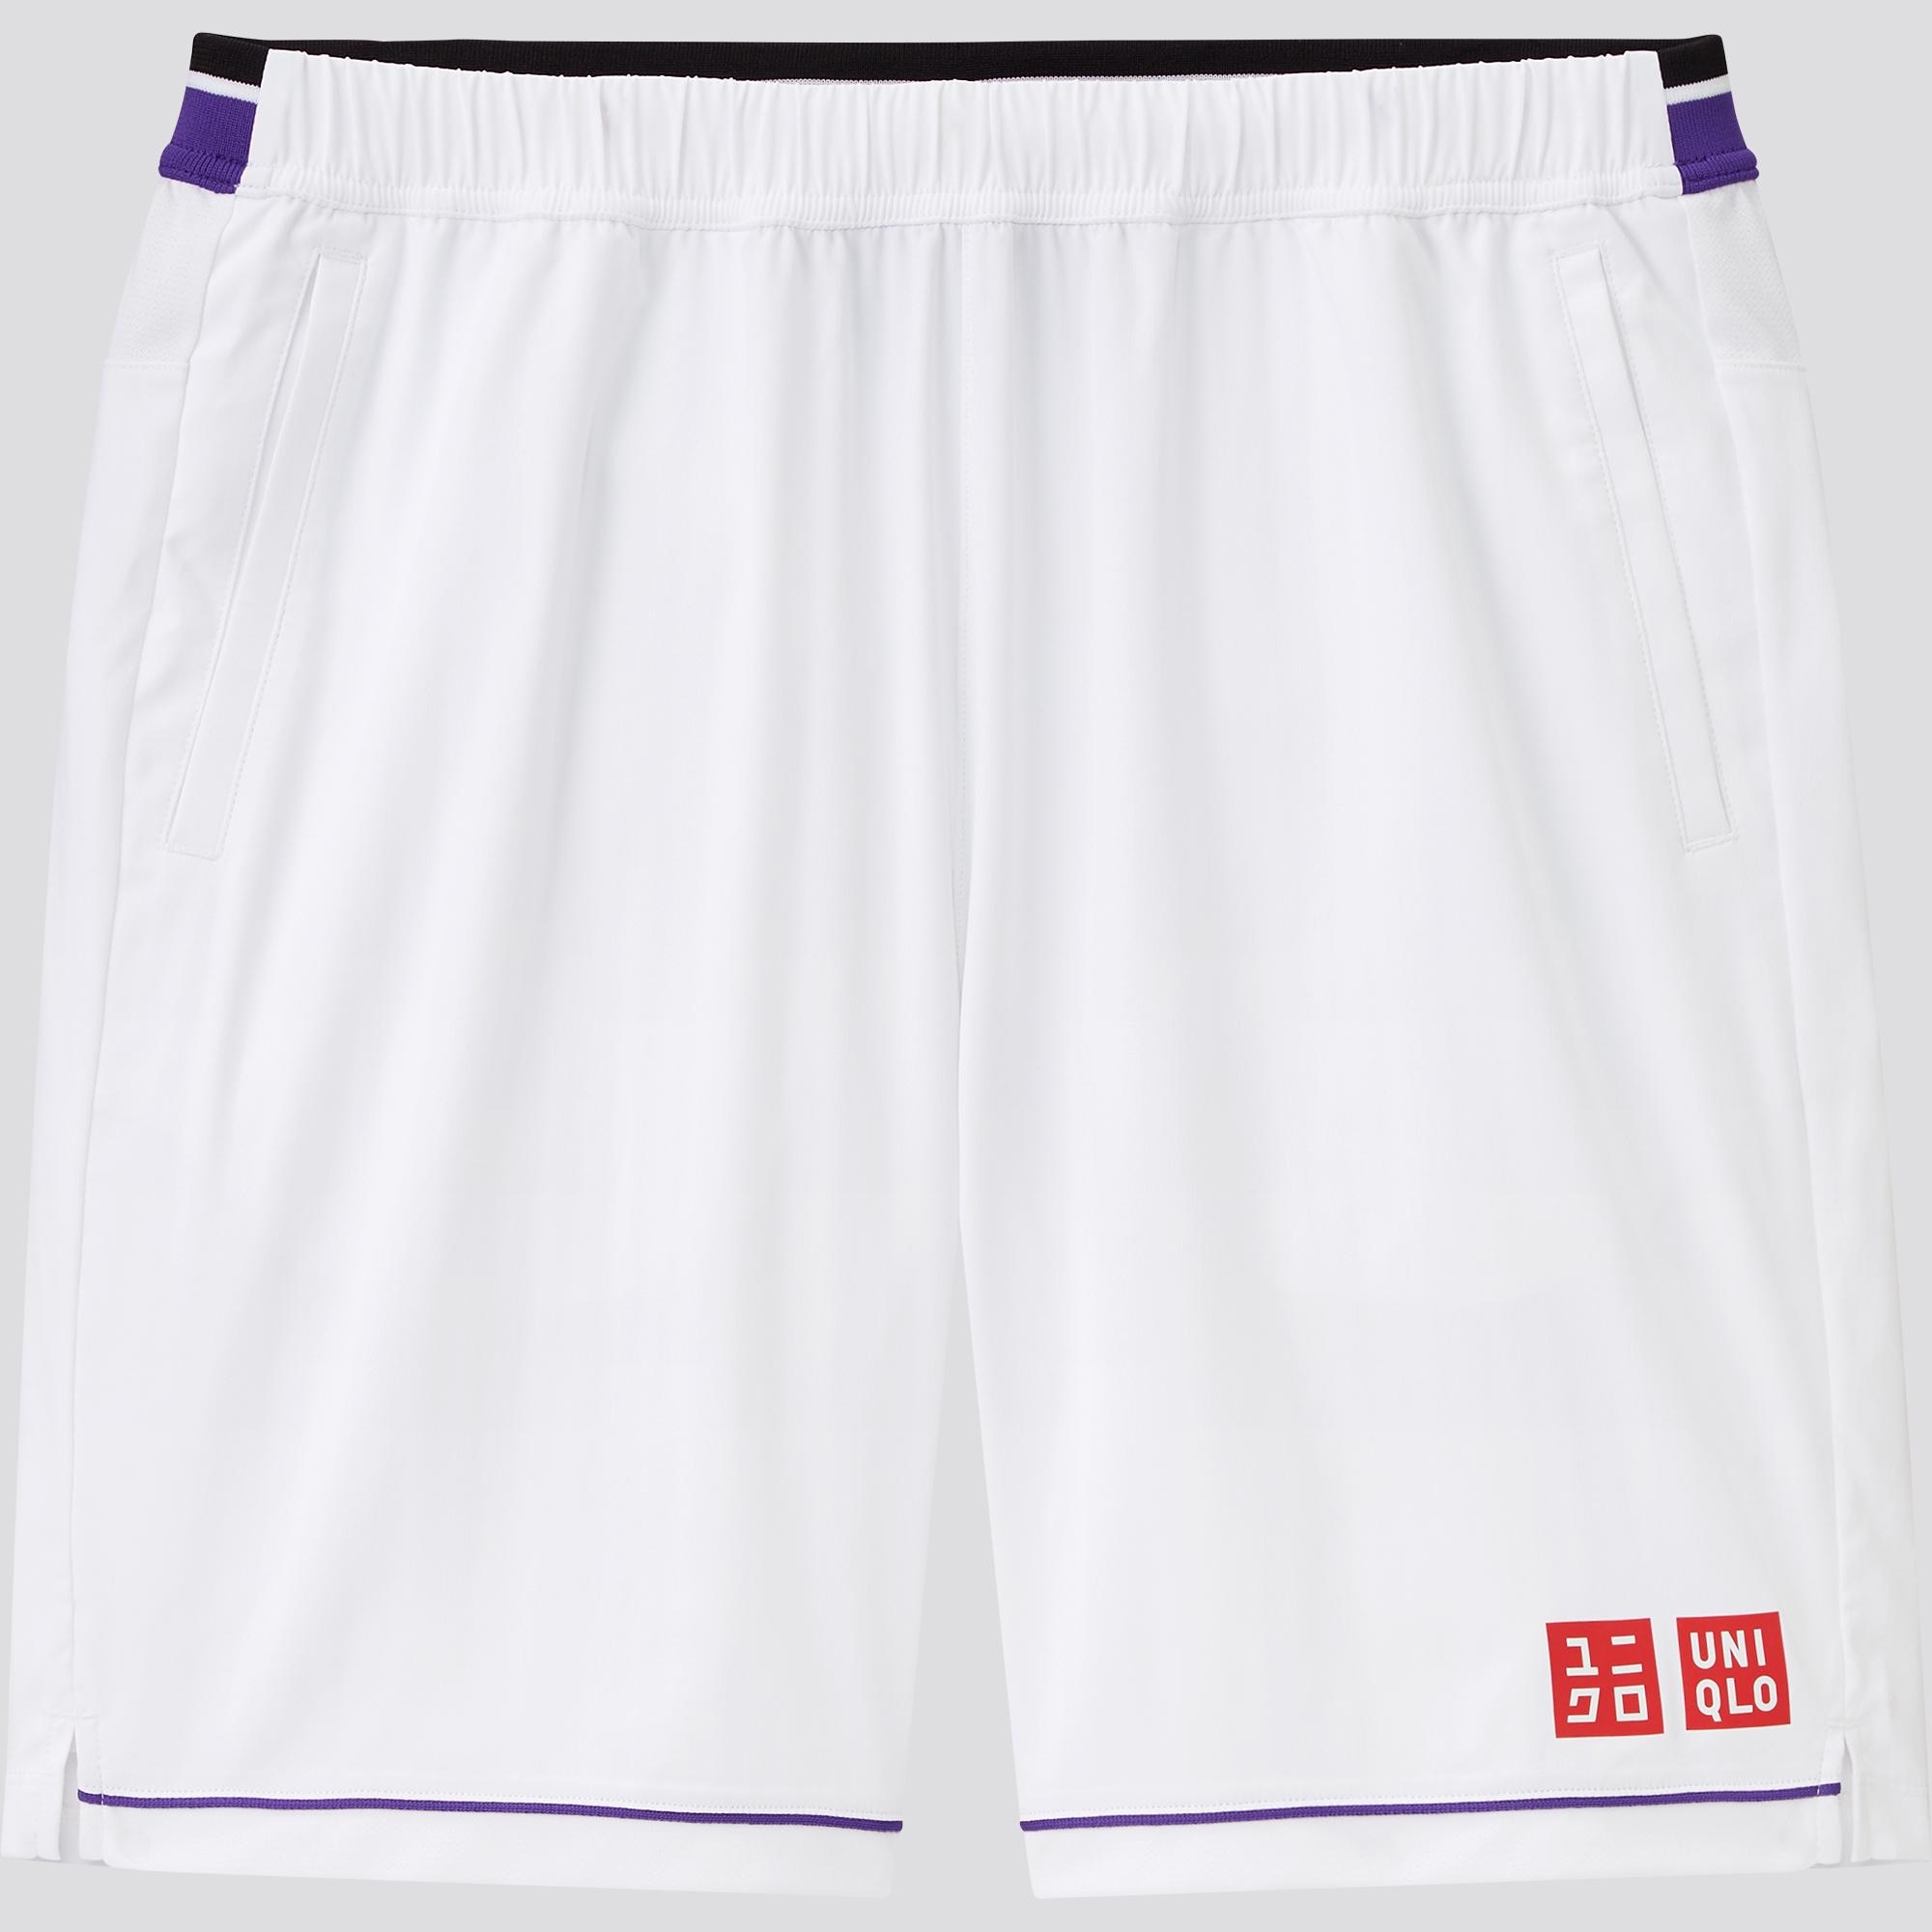 Dry Shorts (Roger Federer)